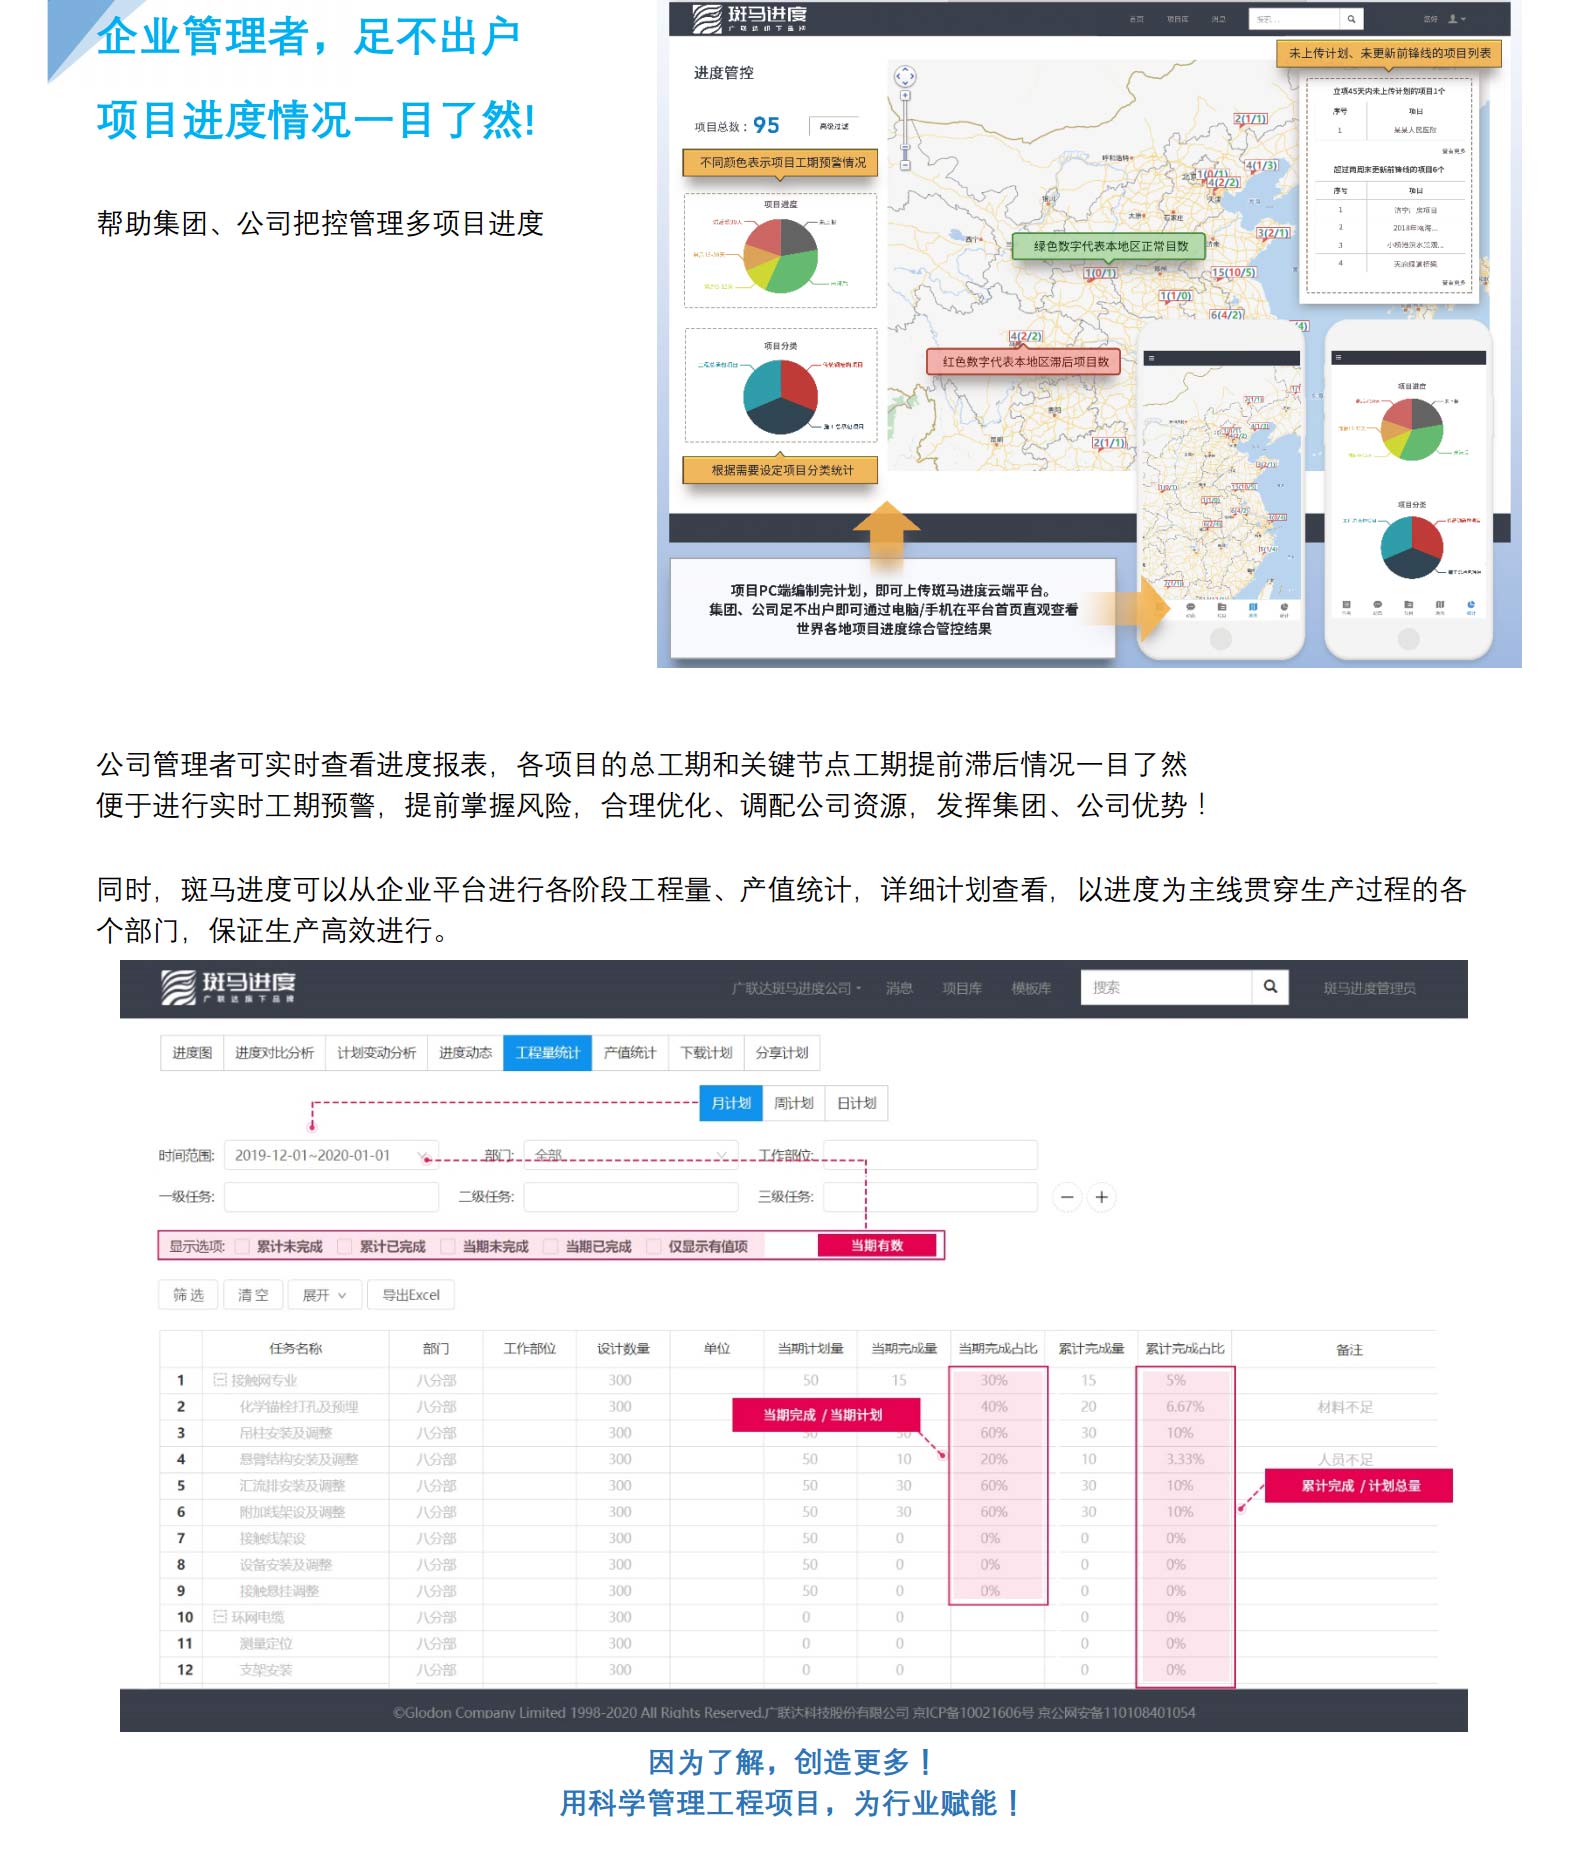 广联达斑马进度计划软件2021免费版截图